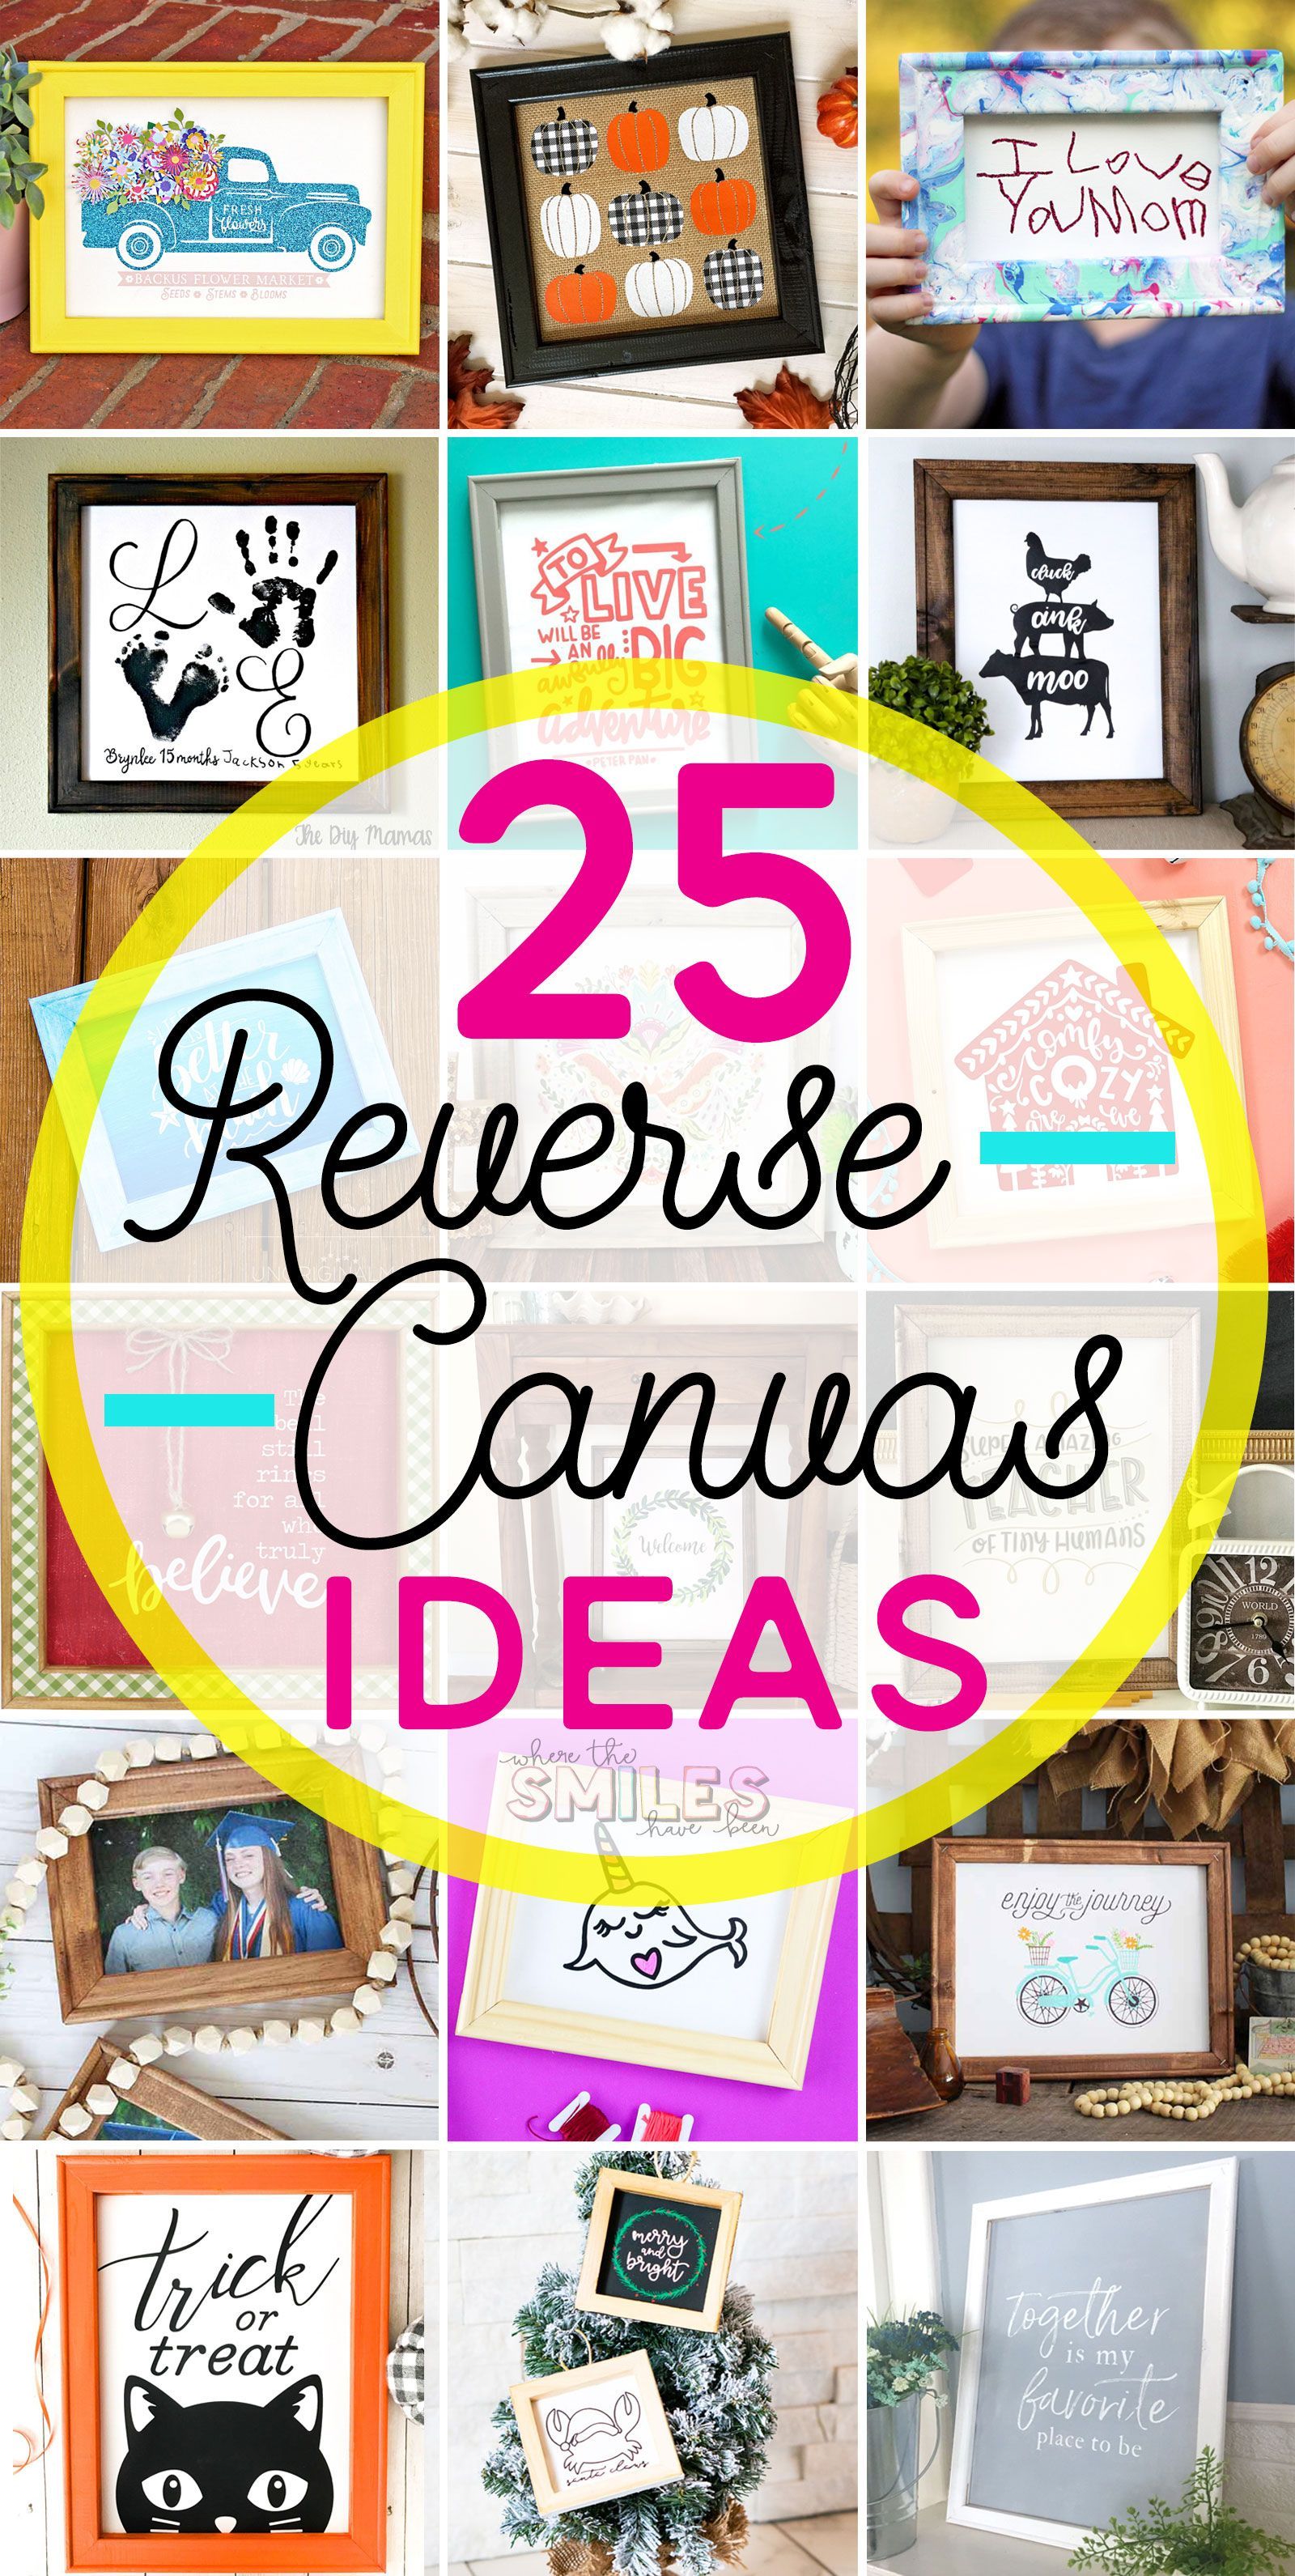 17 canvas diy ideas